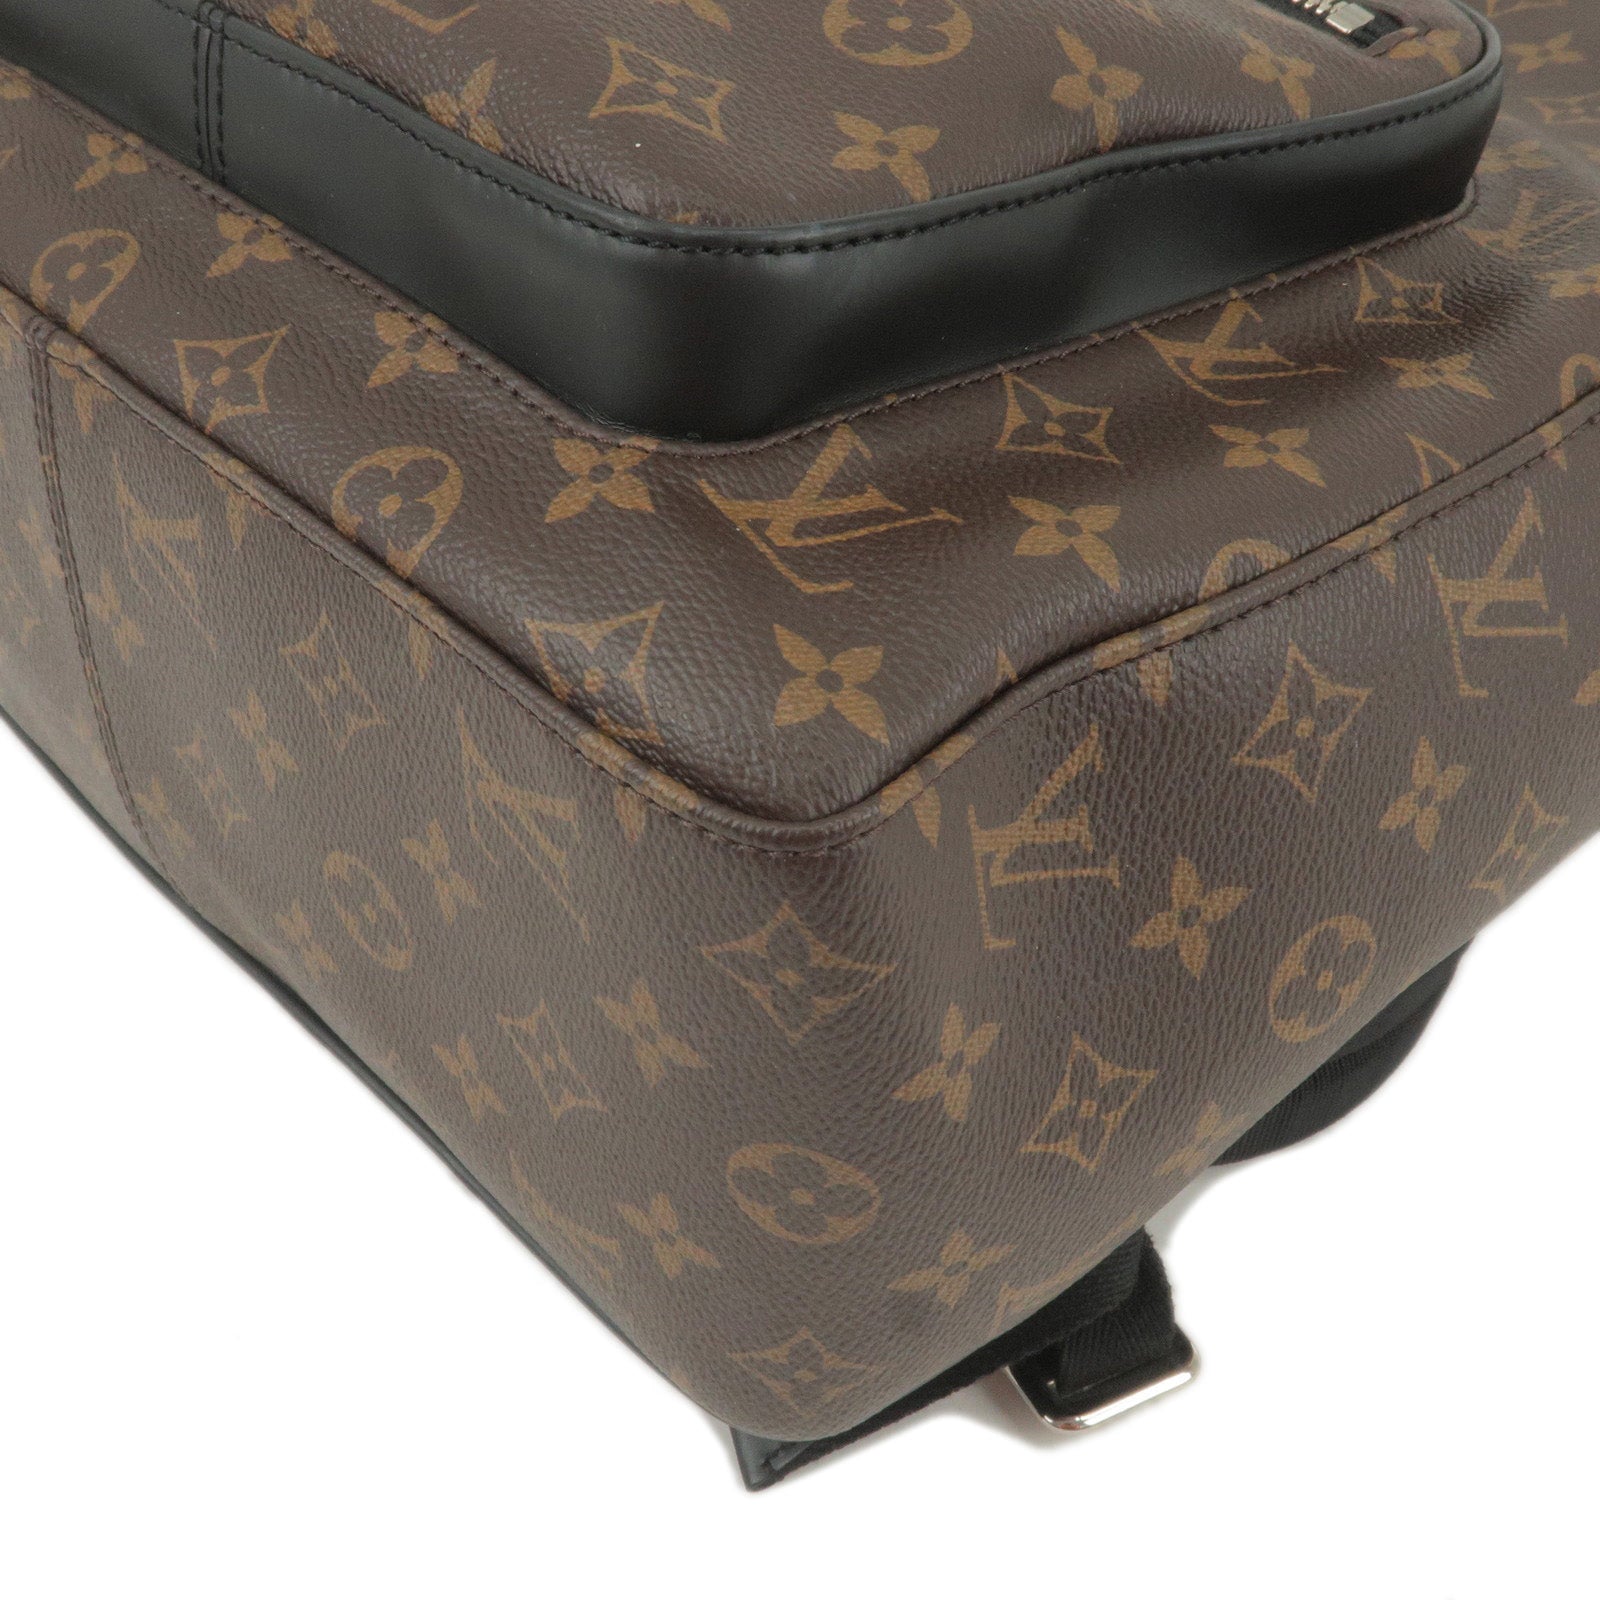 Josh - Back - Louis - Monogram - Vuitton - M41530 – Precio de los bolsos  Louis Vuitton Sologne de segunda mano - Macassar - LOUIS VUITTON Estrela GM  Monogram Canvas Shoulder Bag Limited Edition - Pack